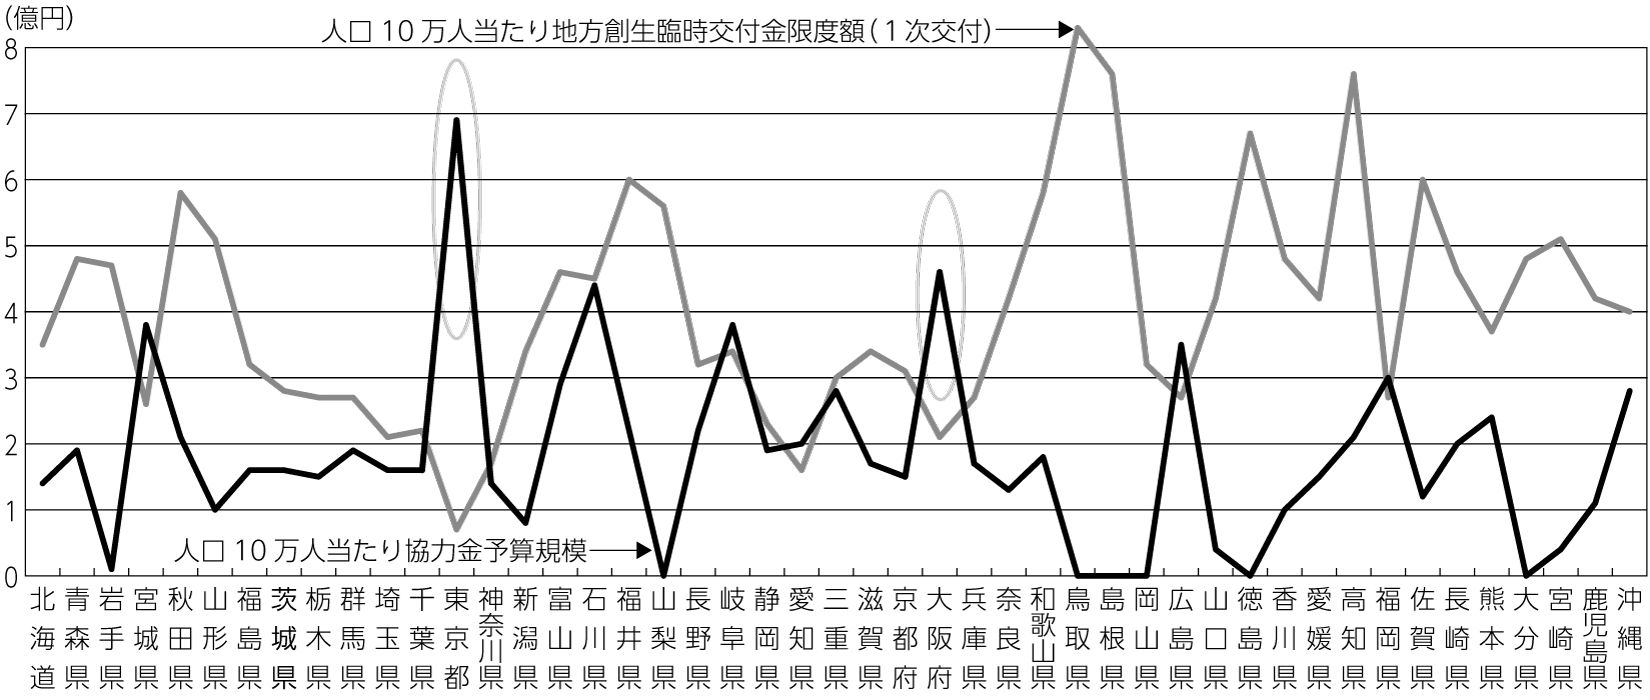 図1　人口10万人当たり都道府県の休業協力金予算規模と地方創生臨時交付金限度額（一次分）